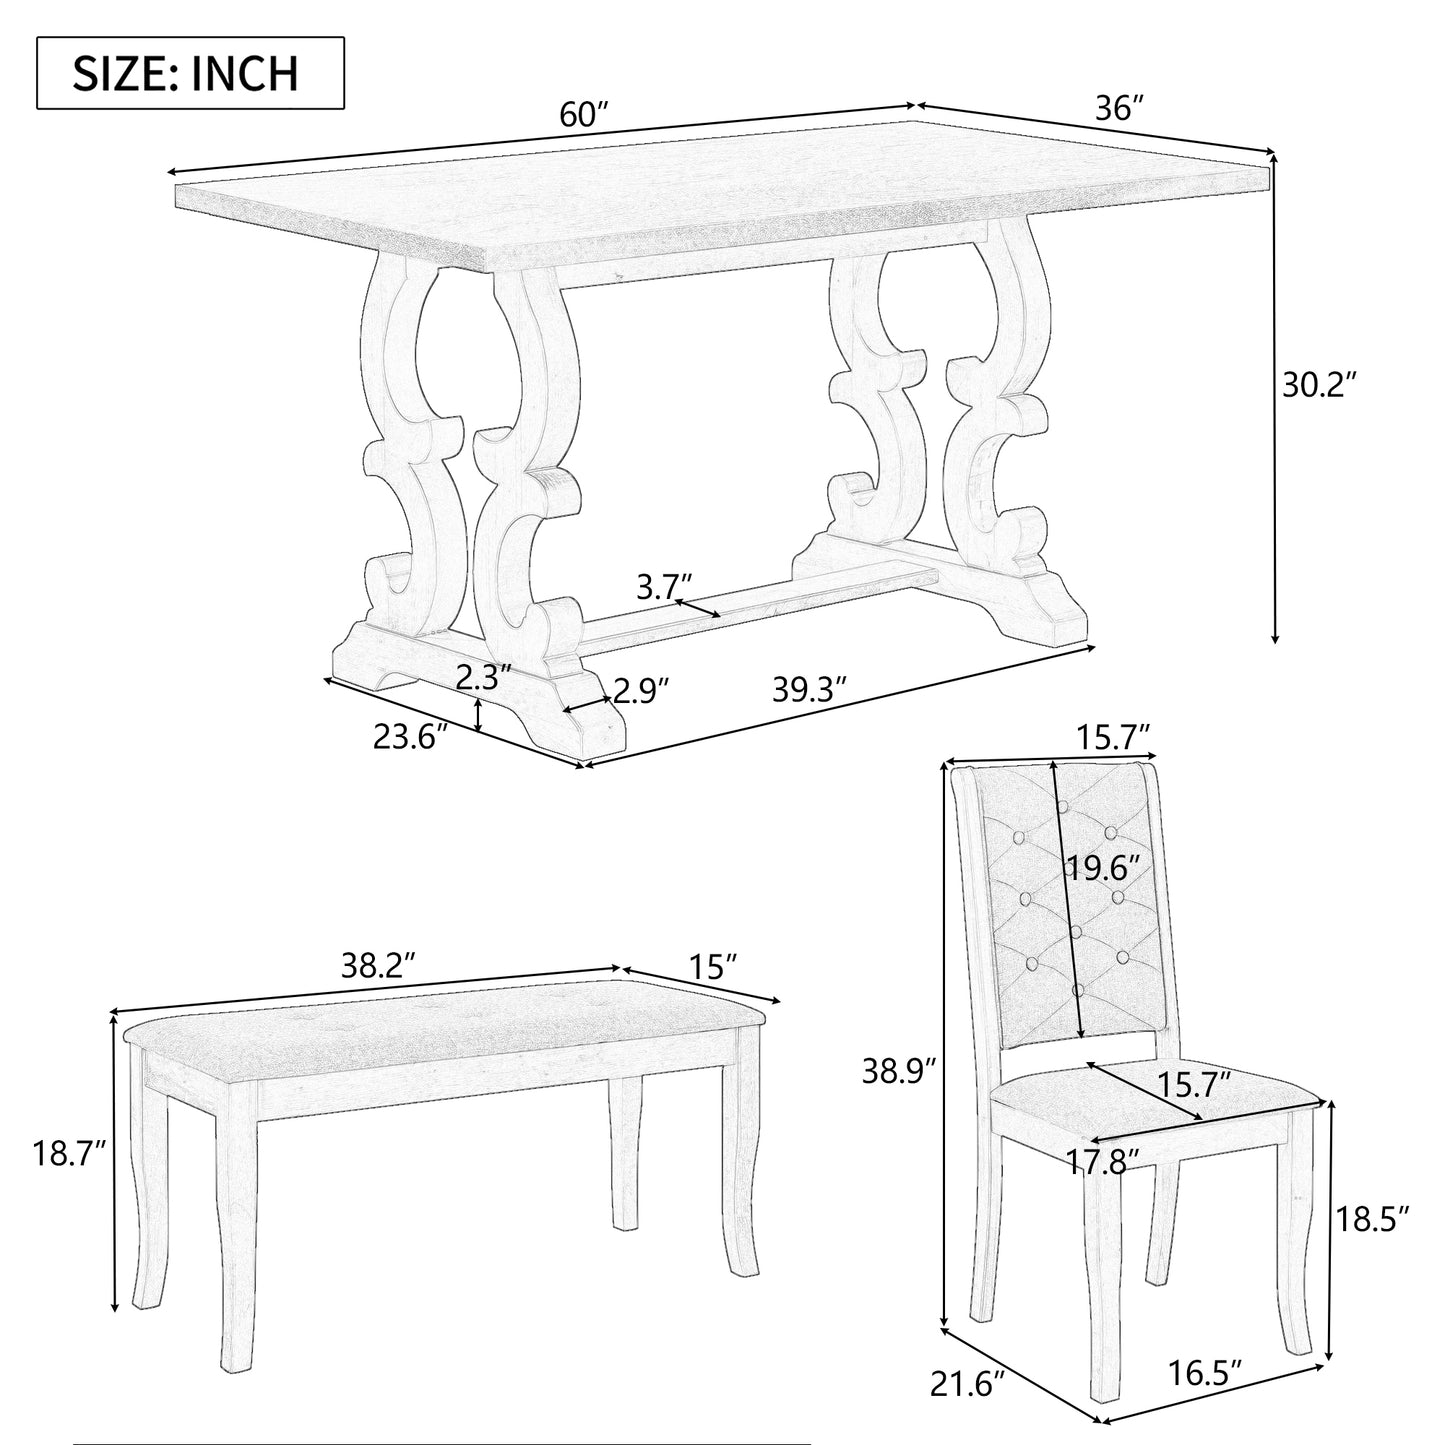 6-teiliges Retro-Essset mit einzigartigen Scroll-Tischbeinen und gepolsterten Sitzen (Grauwäsche)